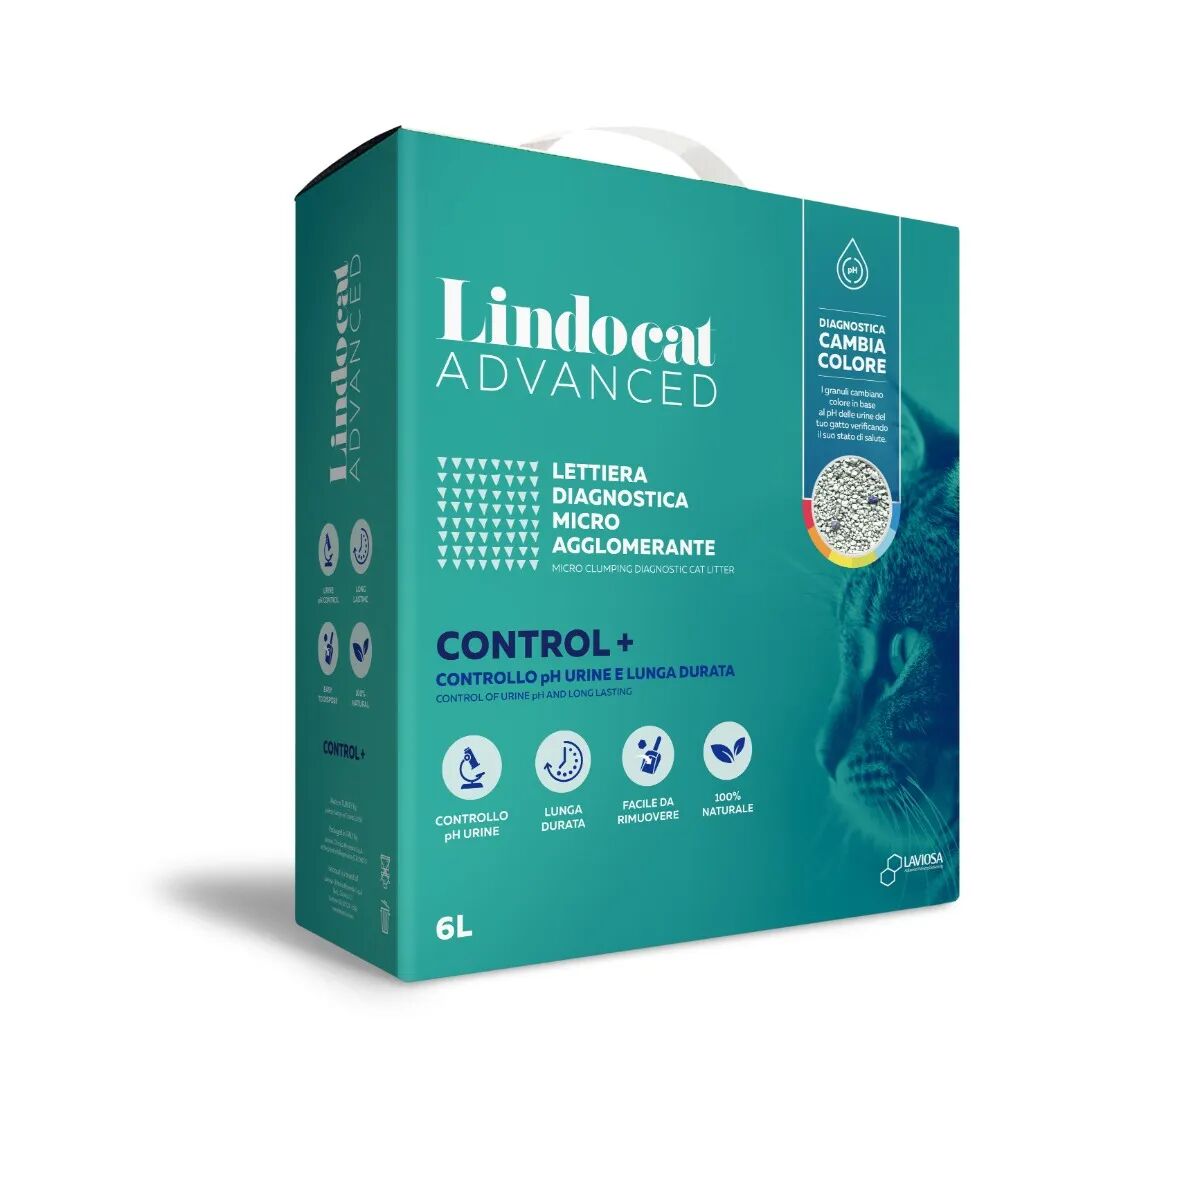 LINDOCAT Advanced Lettiera Agglomerante Control+ 6L